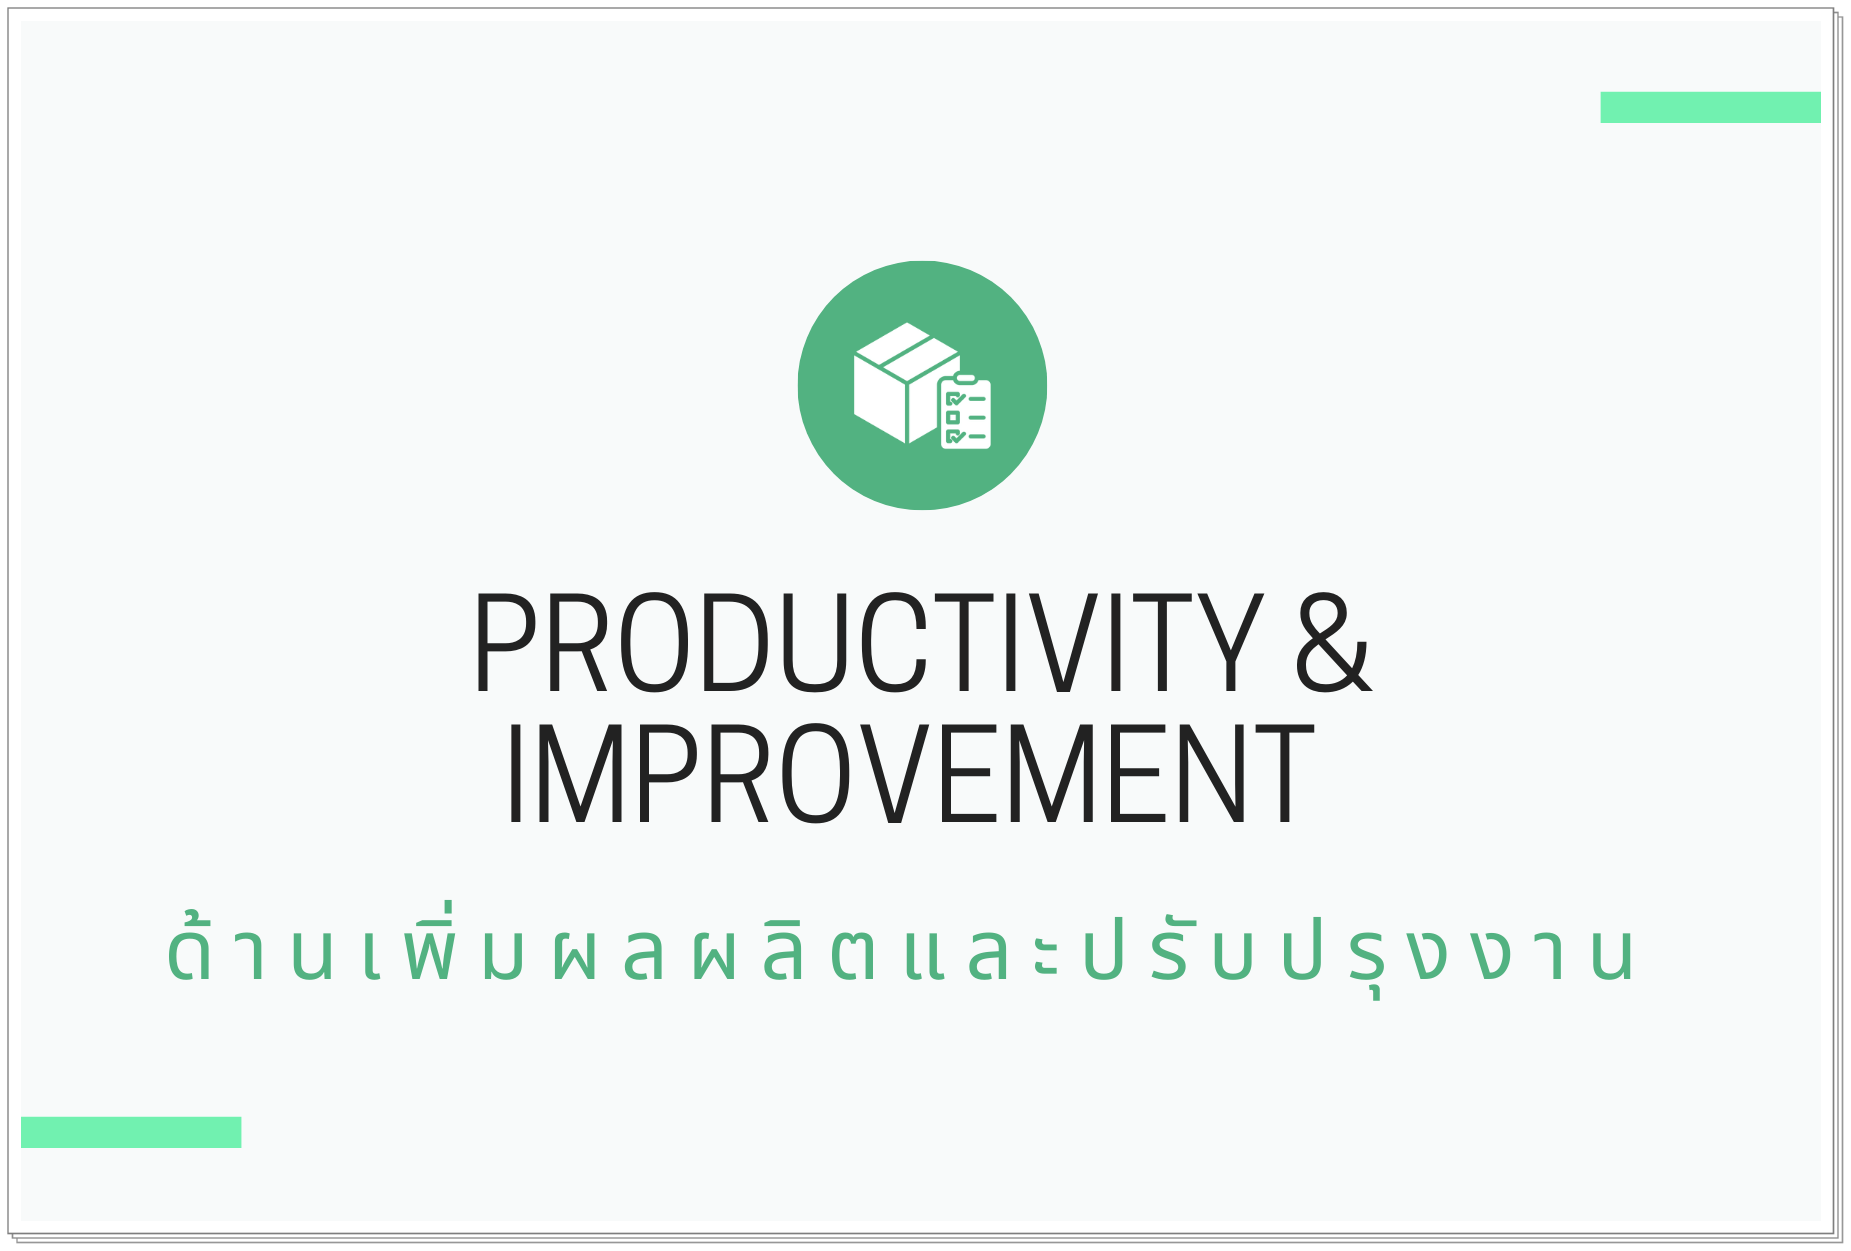 ด้านเพิ่มผลผลิตและปรับปรุงงาน (Productivity & Improvement)